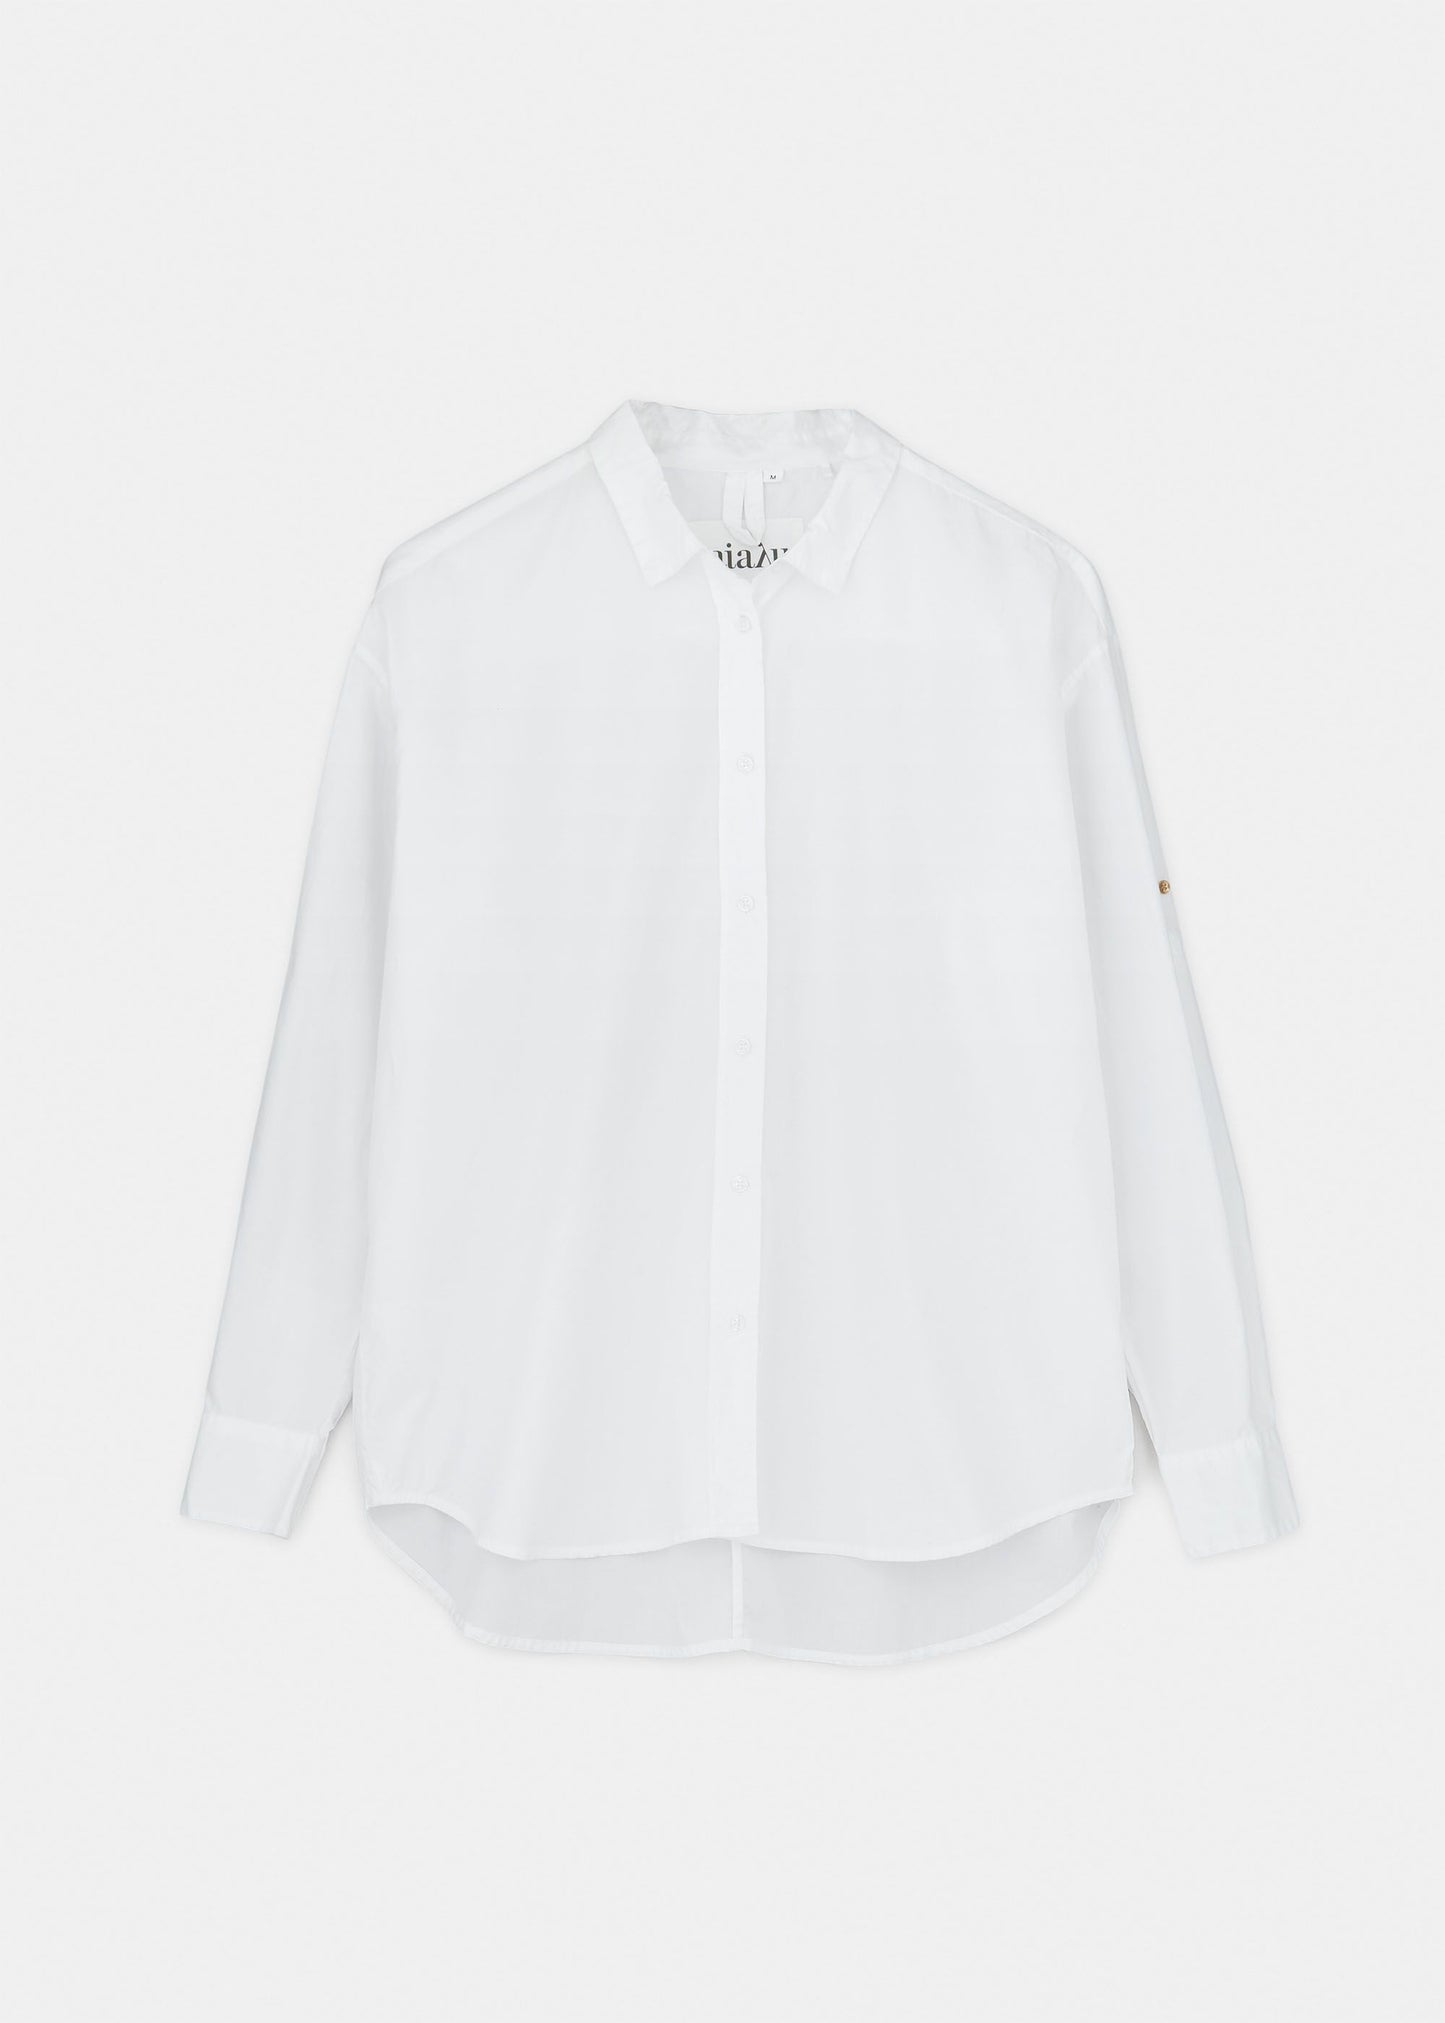 Aiayu "Shirt" White